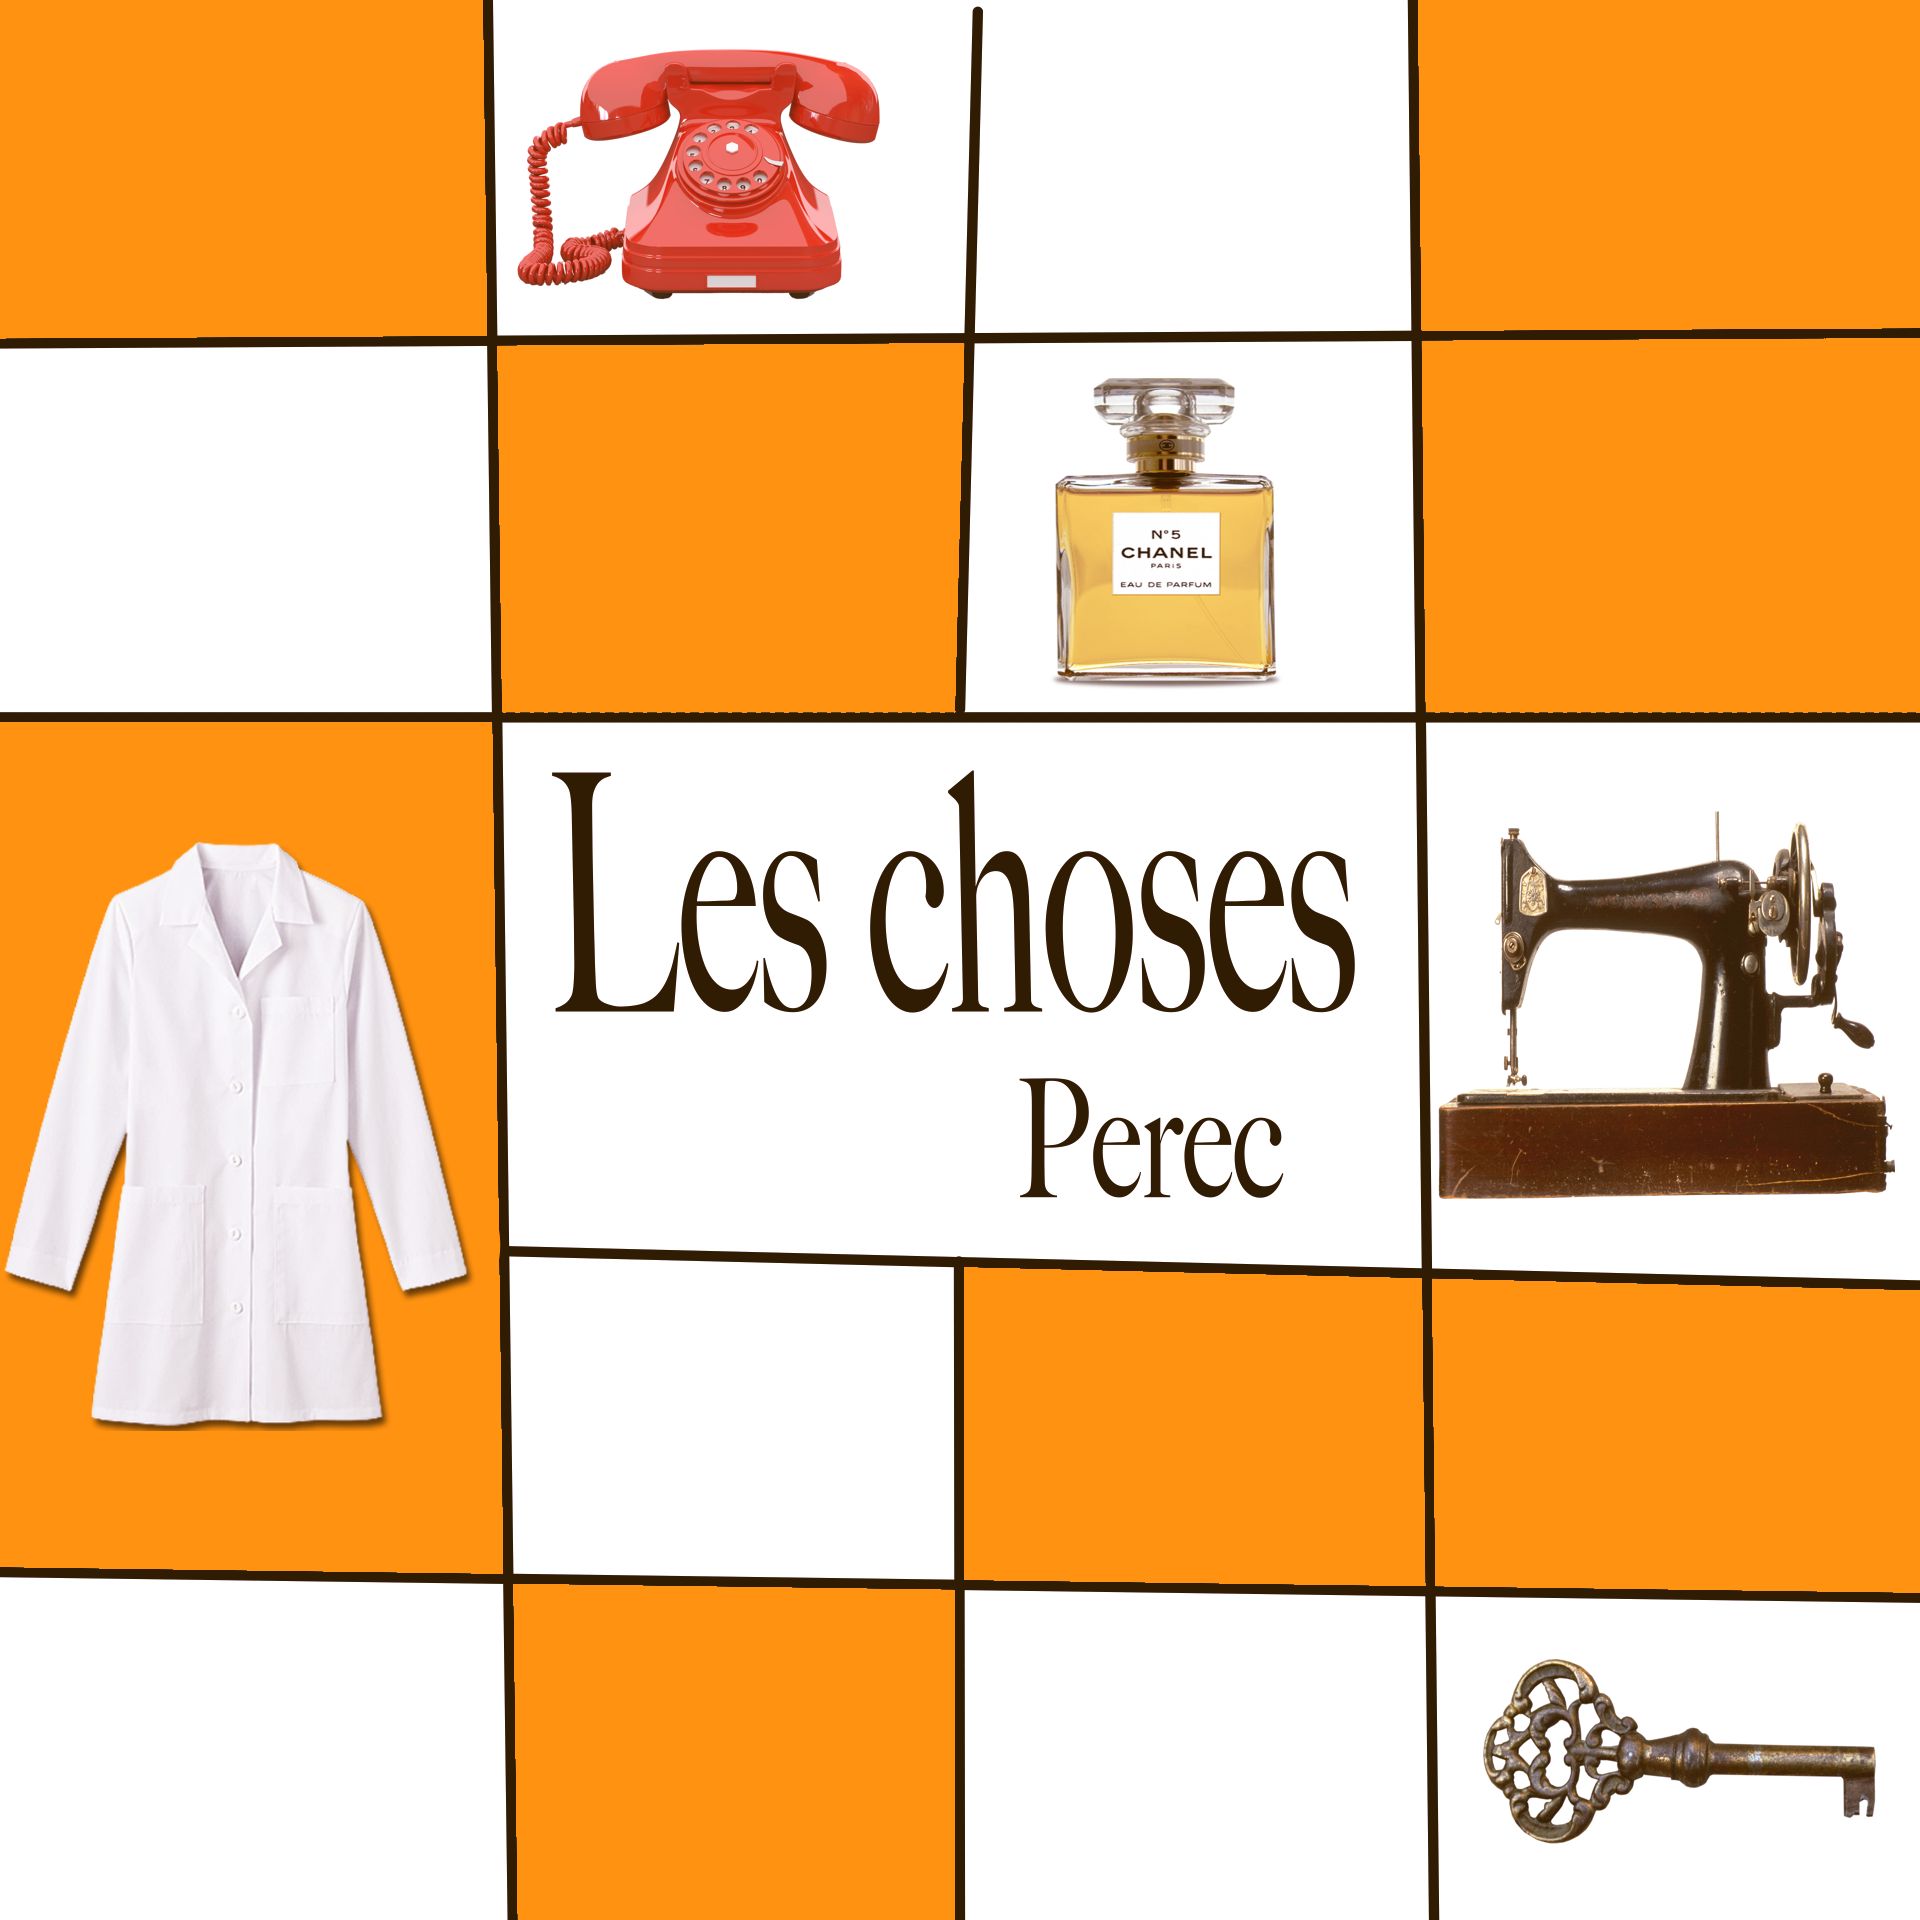 Les Choses - Georges Perec